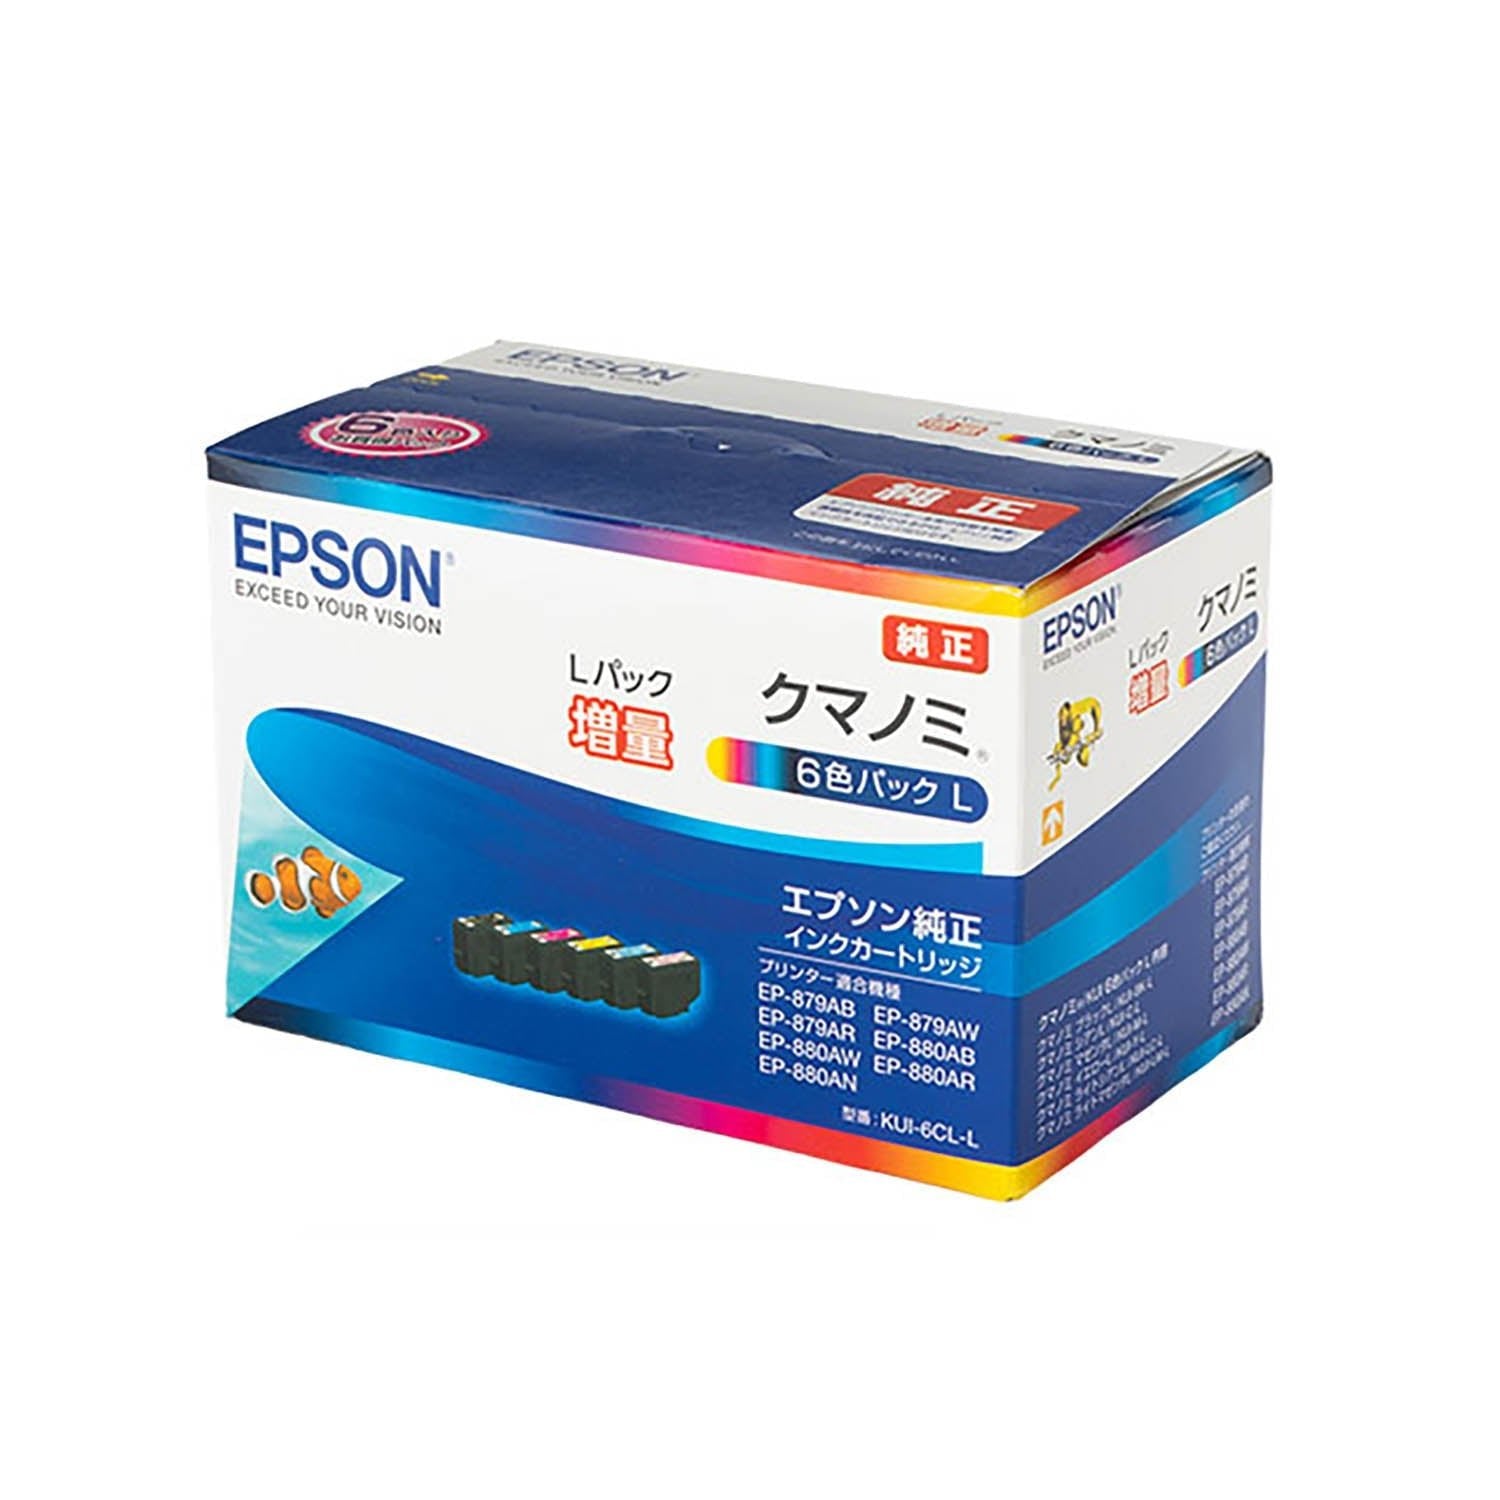 EPSON インクカートリッジ KUI-6CL-L クマノミ6箱